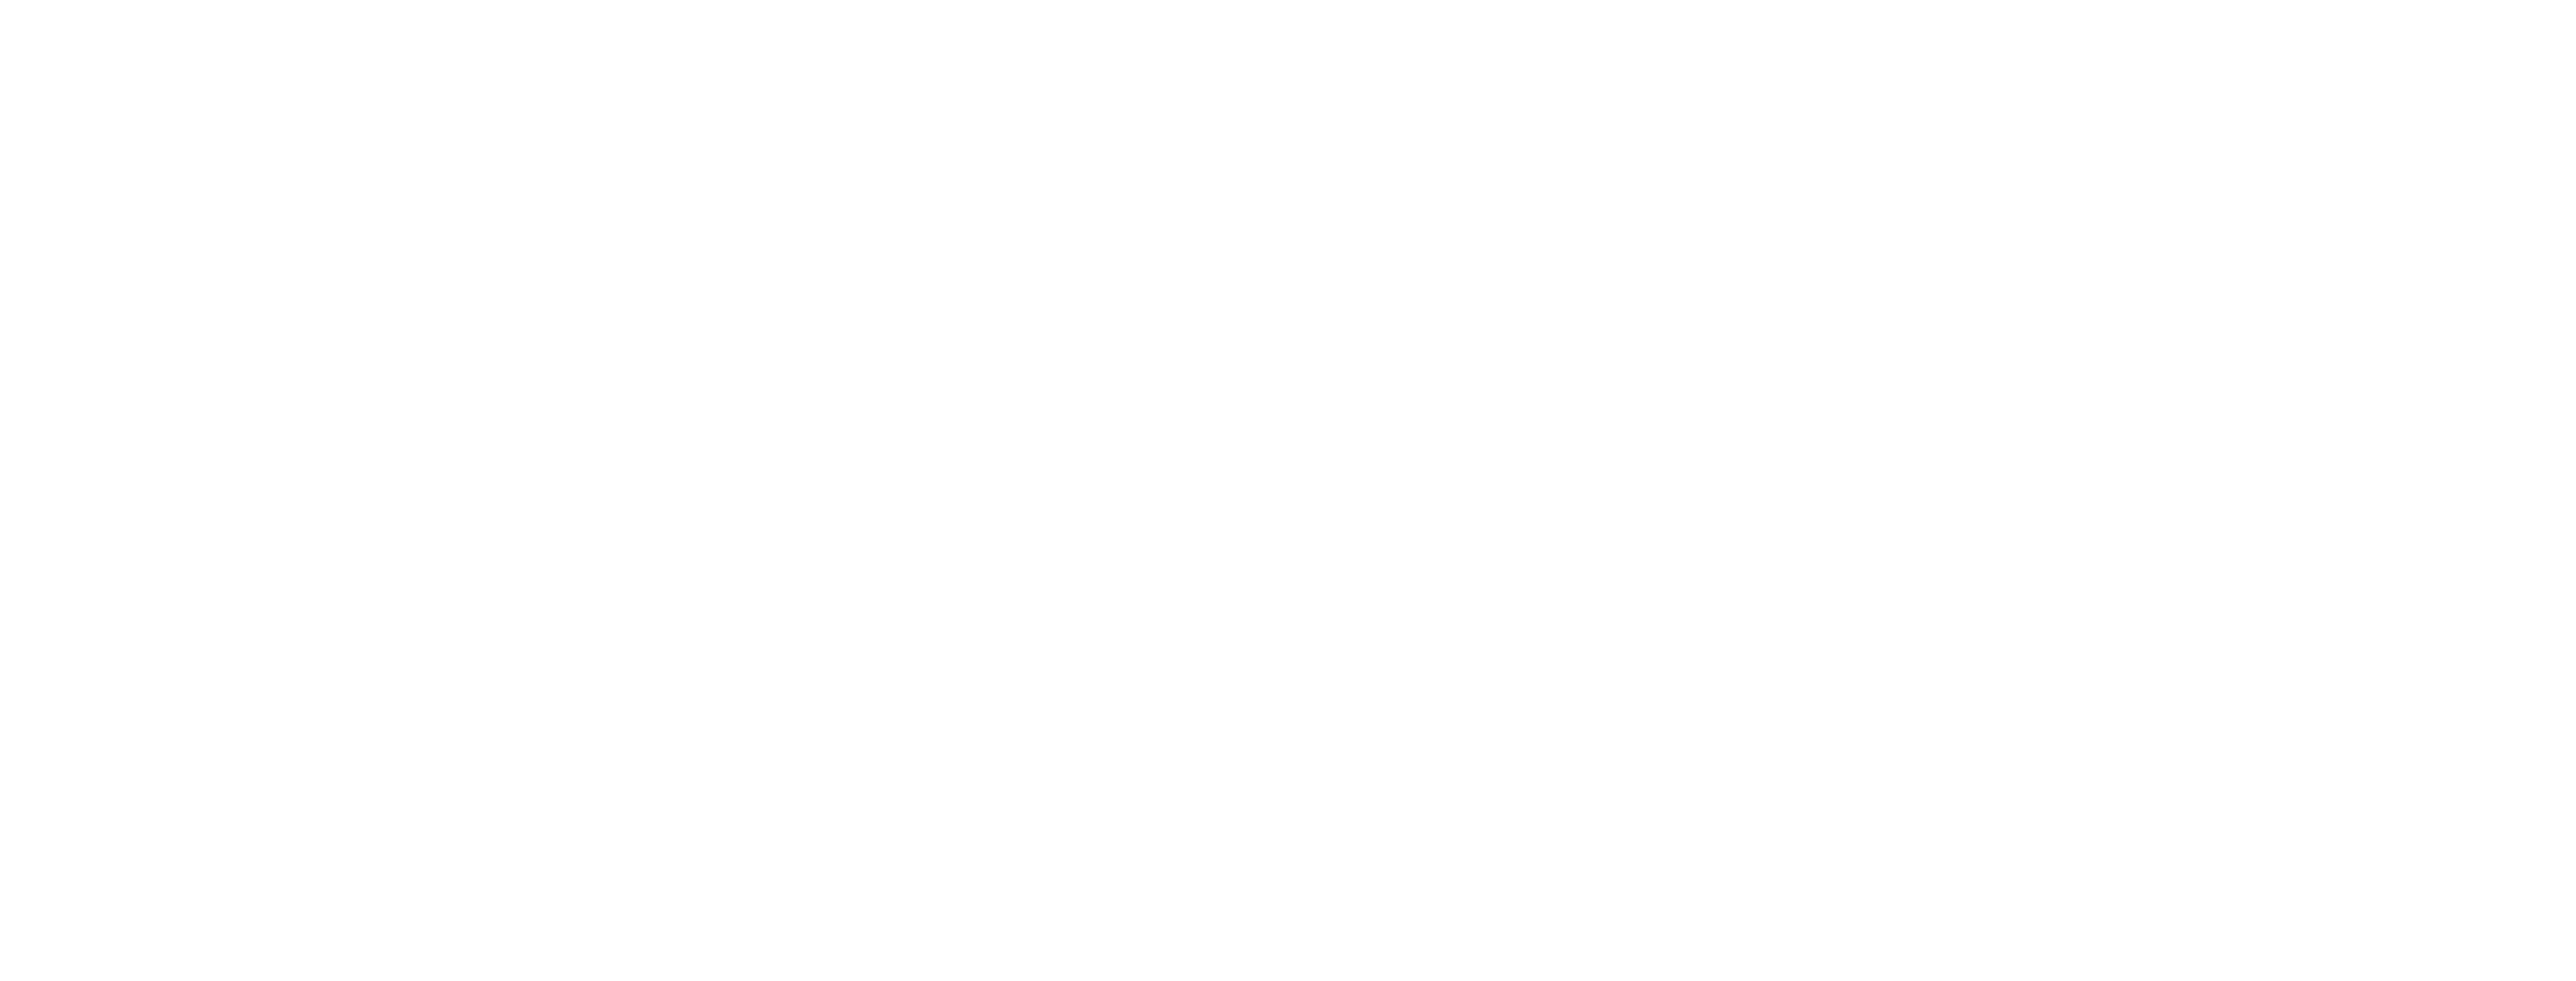 Vitalife Center